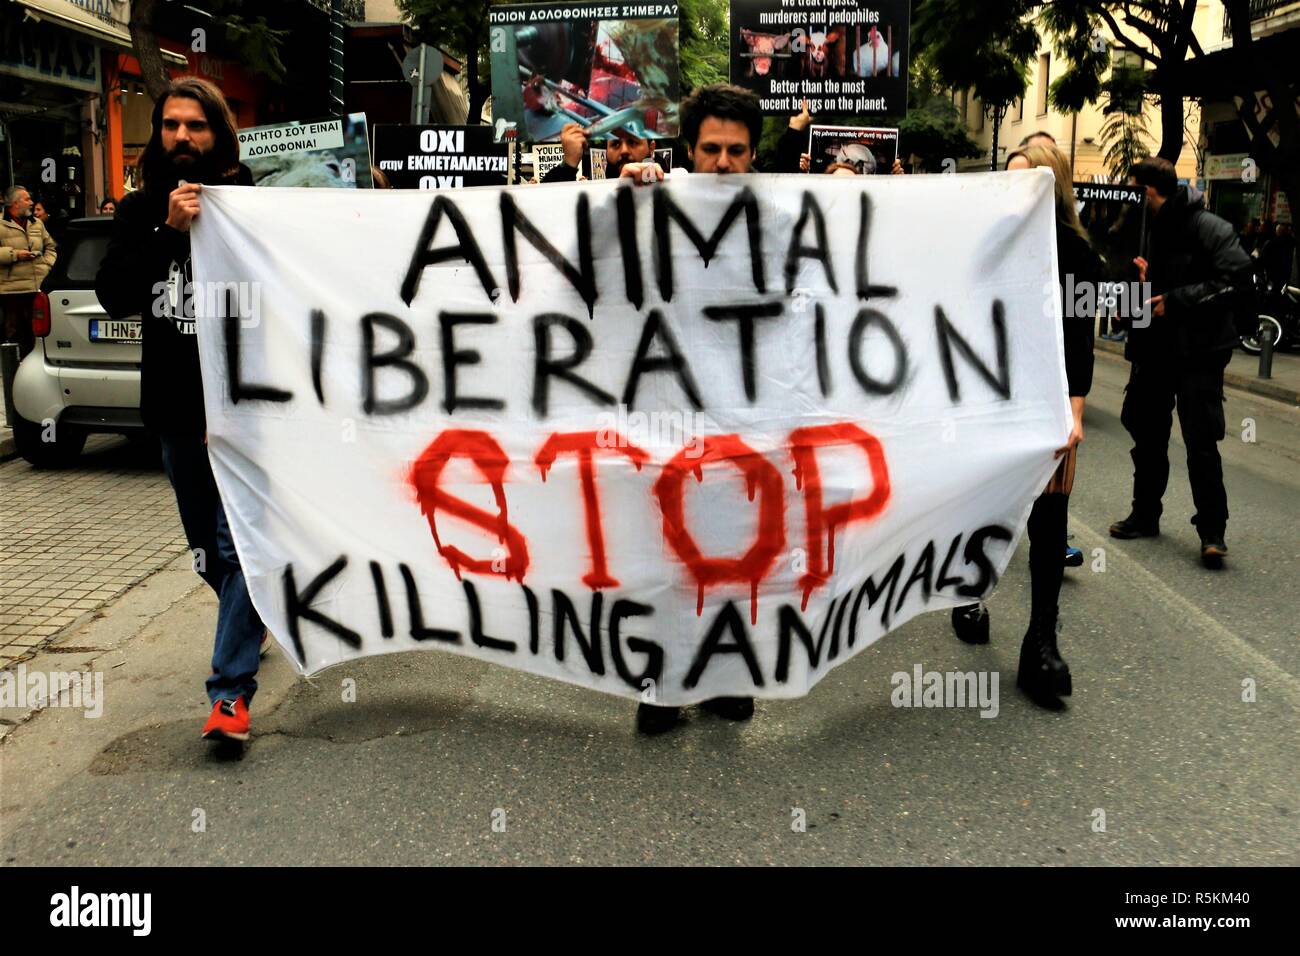 Les protestataires sont vues tenant une bannière pendant la manifestation. Militants des droits de l'animal démontrent à Athènes contre l'abus des animaux, de la violence, les mauvais traitements envers les animaux et la promotion d'un mode de vie végétalien. Banque D'Images